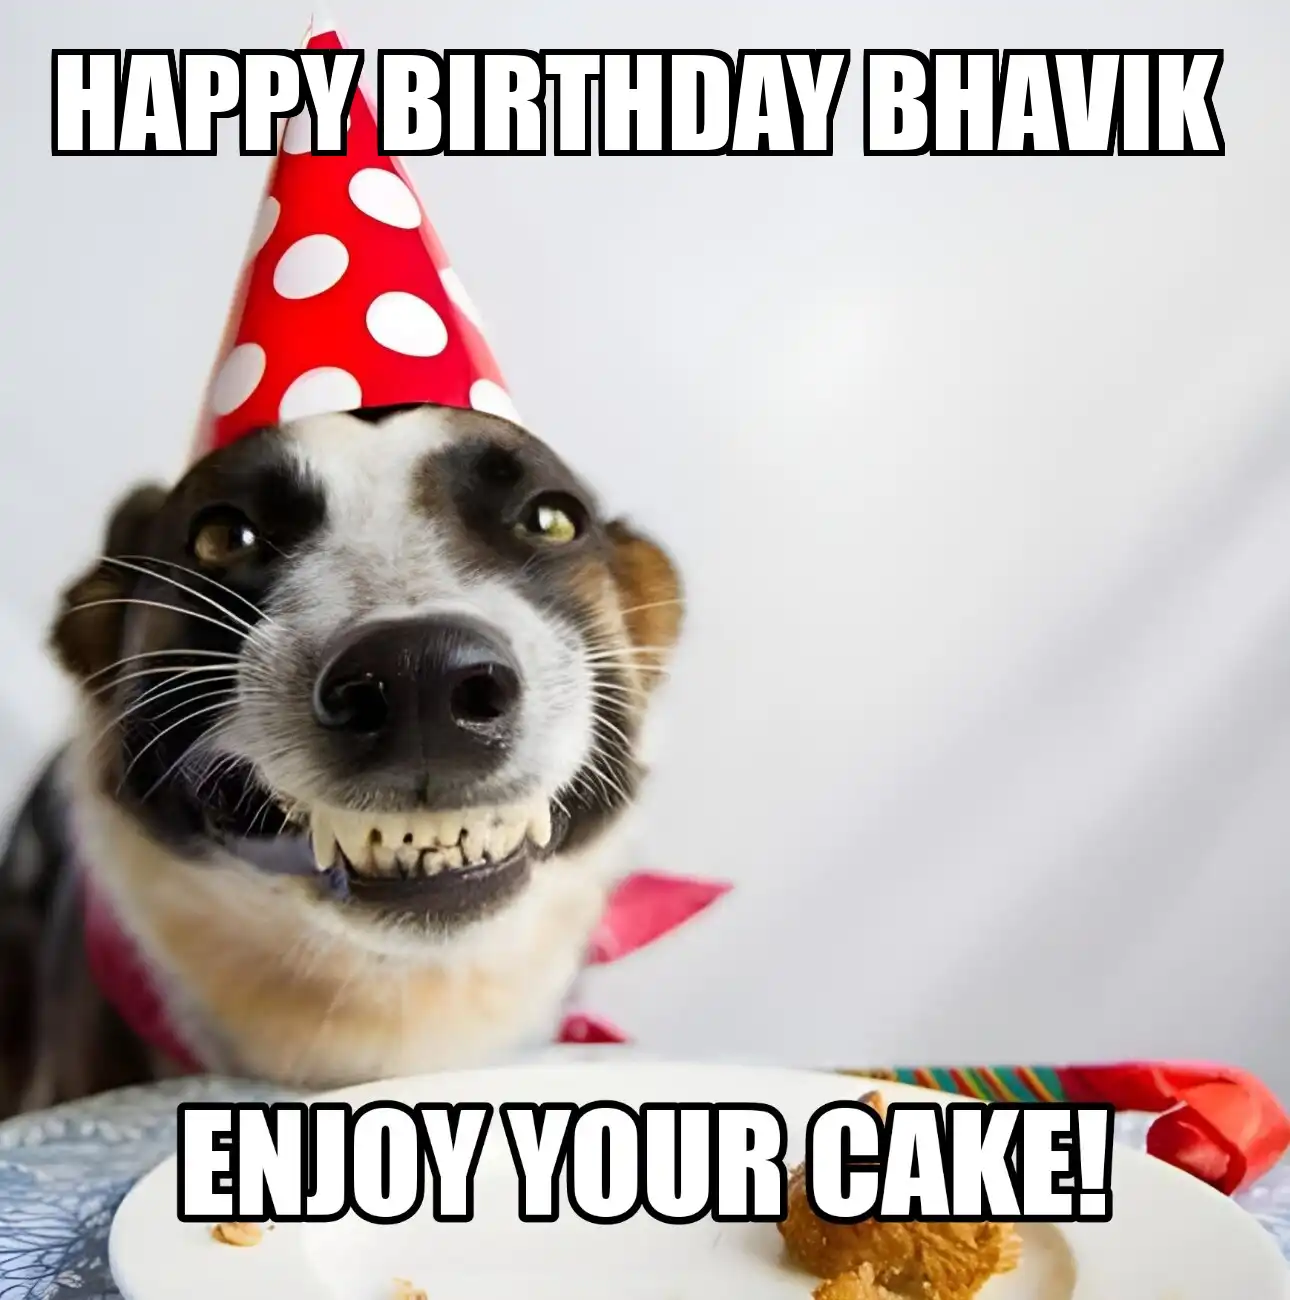 Happy Birthday Bhavik Enjoy Your Cake Dog Meme